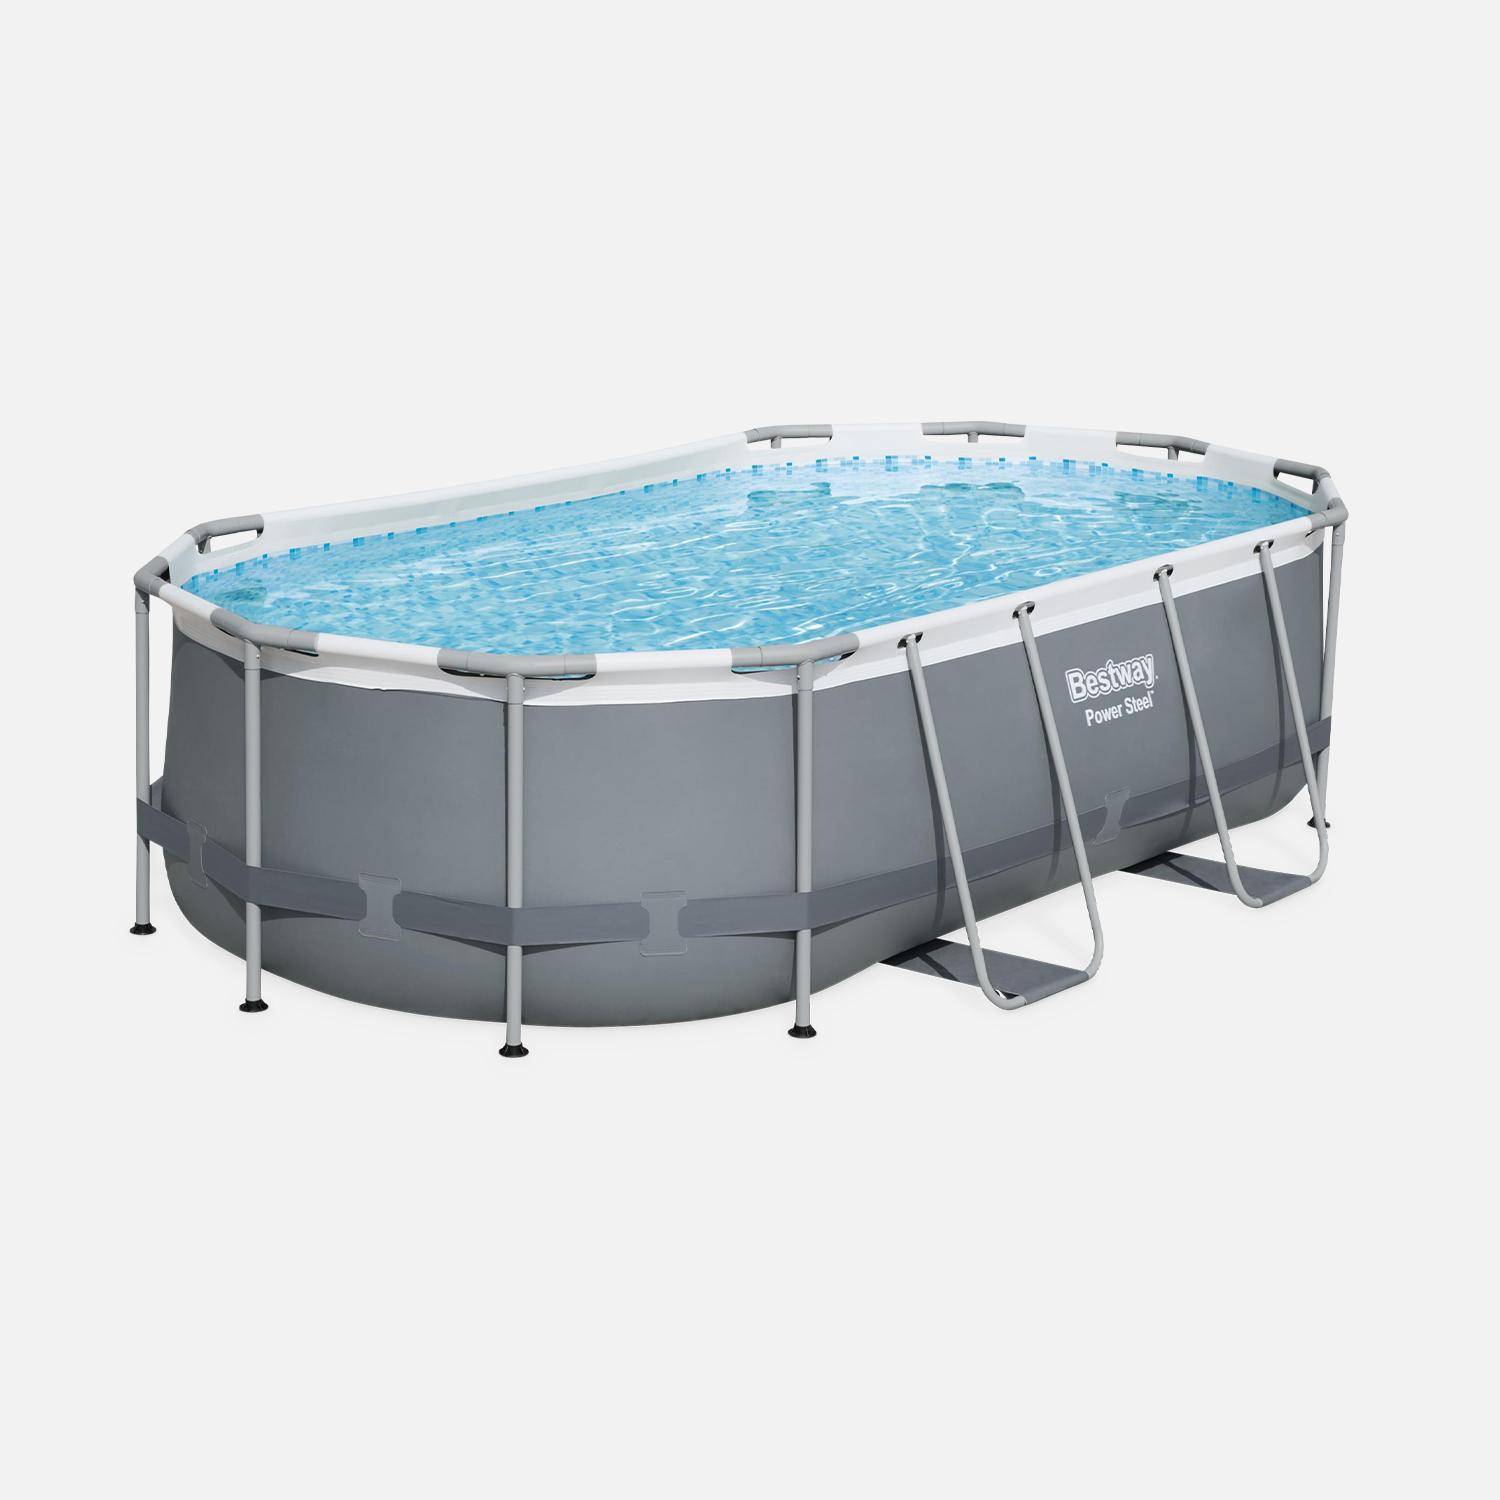 BESTWAY Kit completo per piscina - Grigio Spinelle - piscina tubolare ovale 4x2 m, pompa filtro, scaletta e kit di riparazione inclusi Photo2